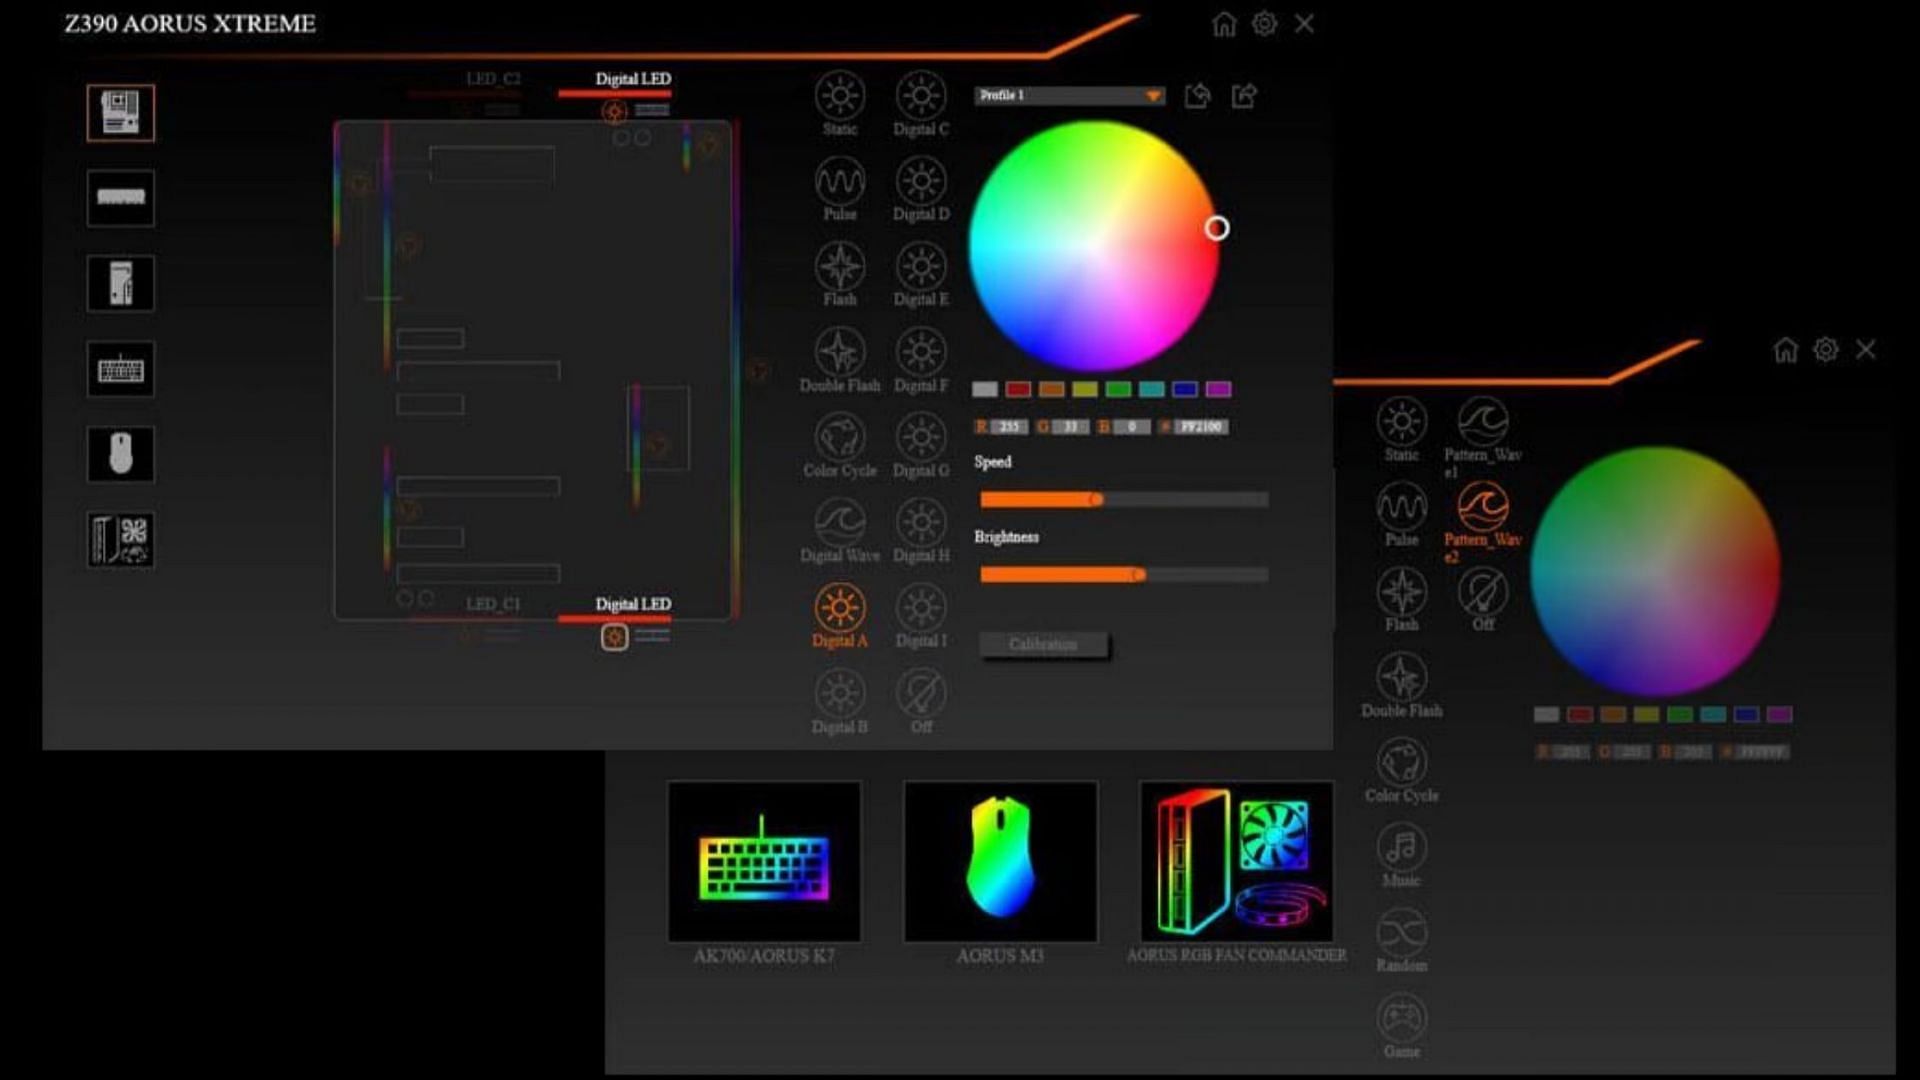 RGB Fusion 2.0 (Image via Gigabyte)